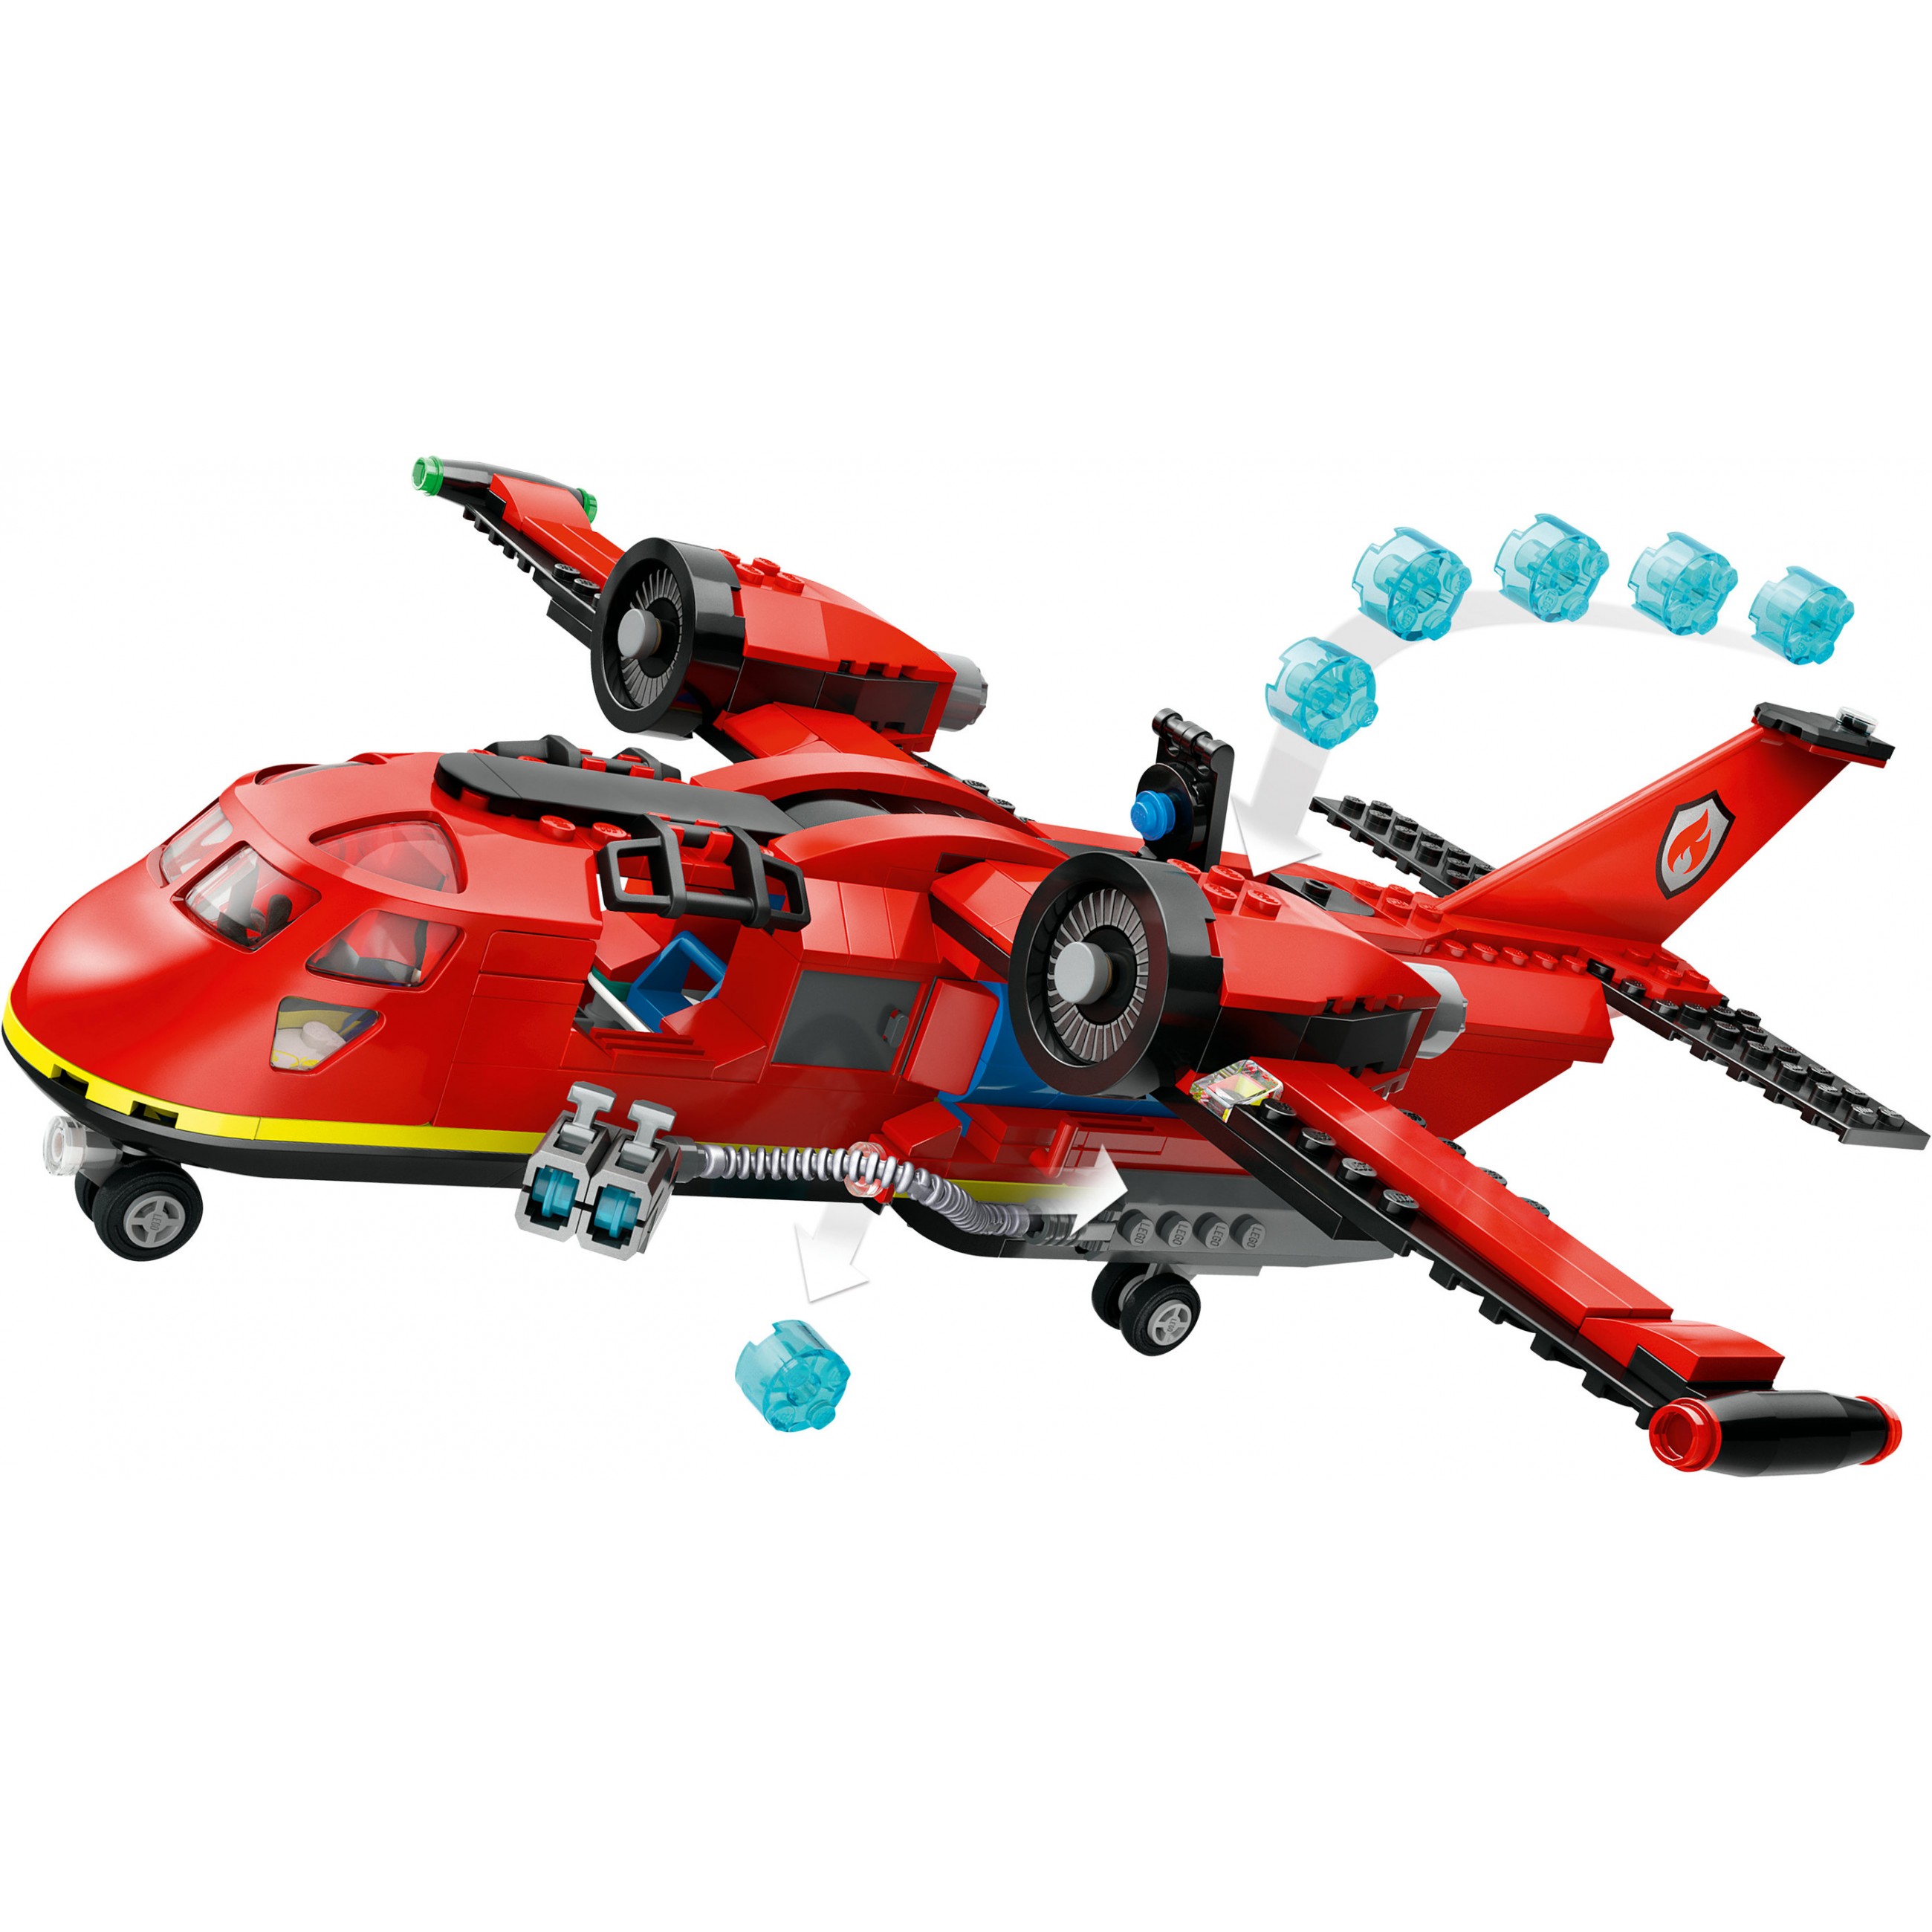 LEGO 60413, Spielzeug, LEGO Fire Rescue Plane 60413 (BILD6)